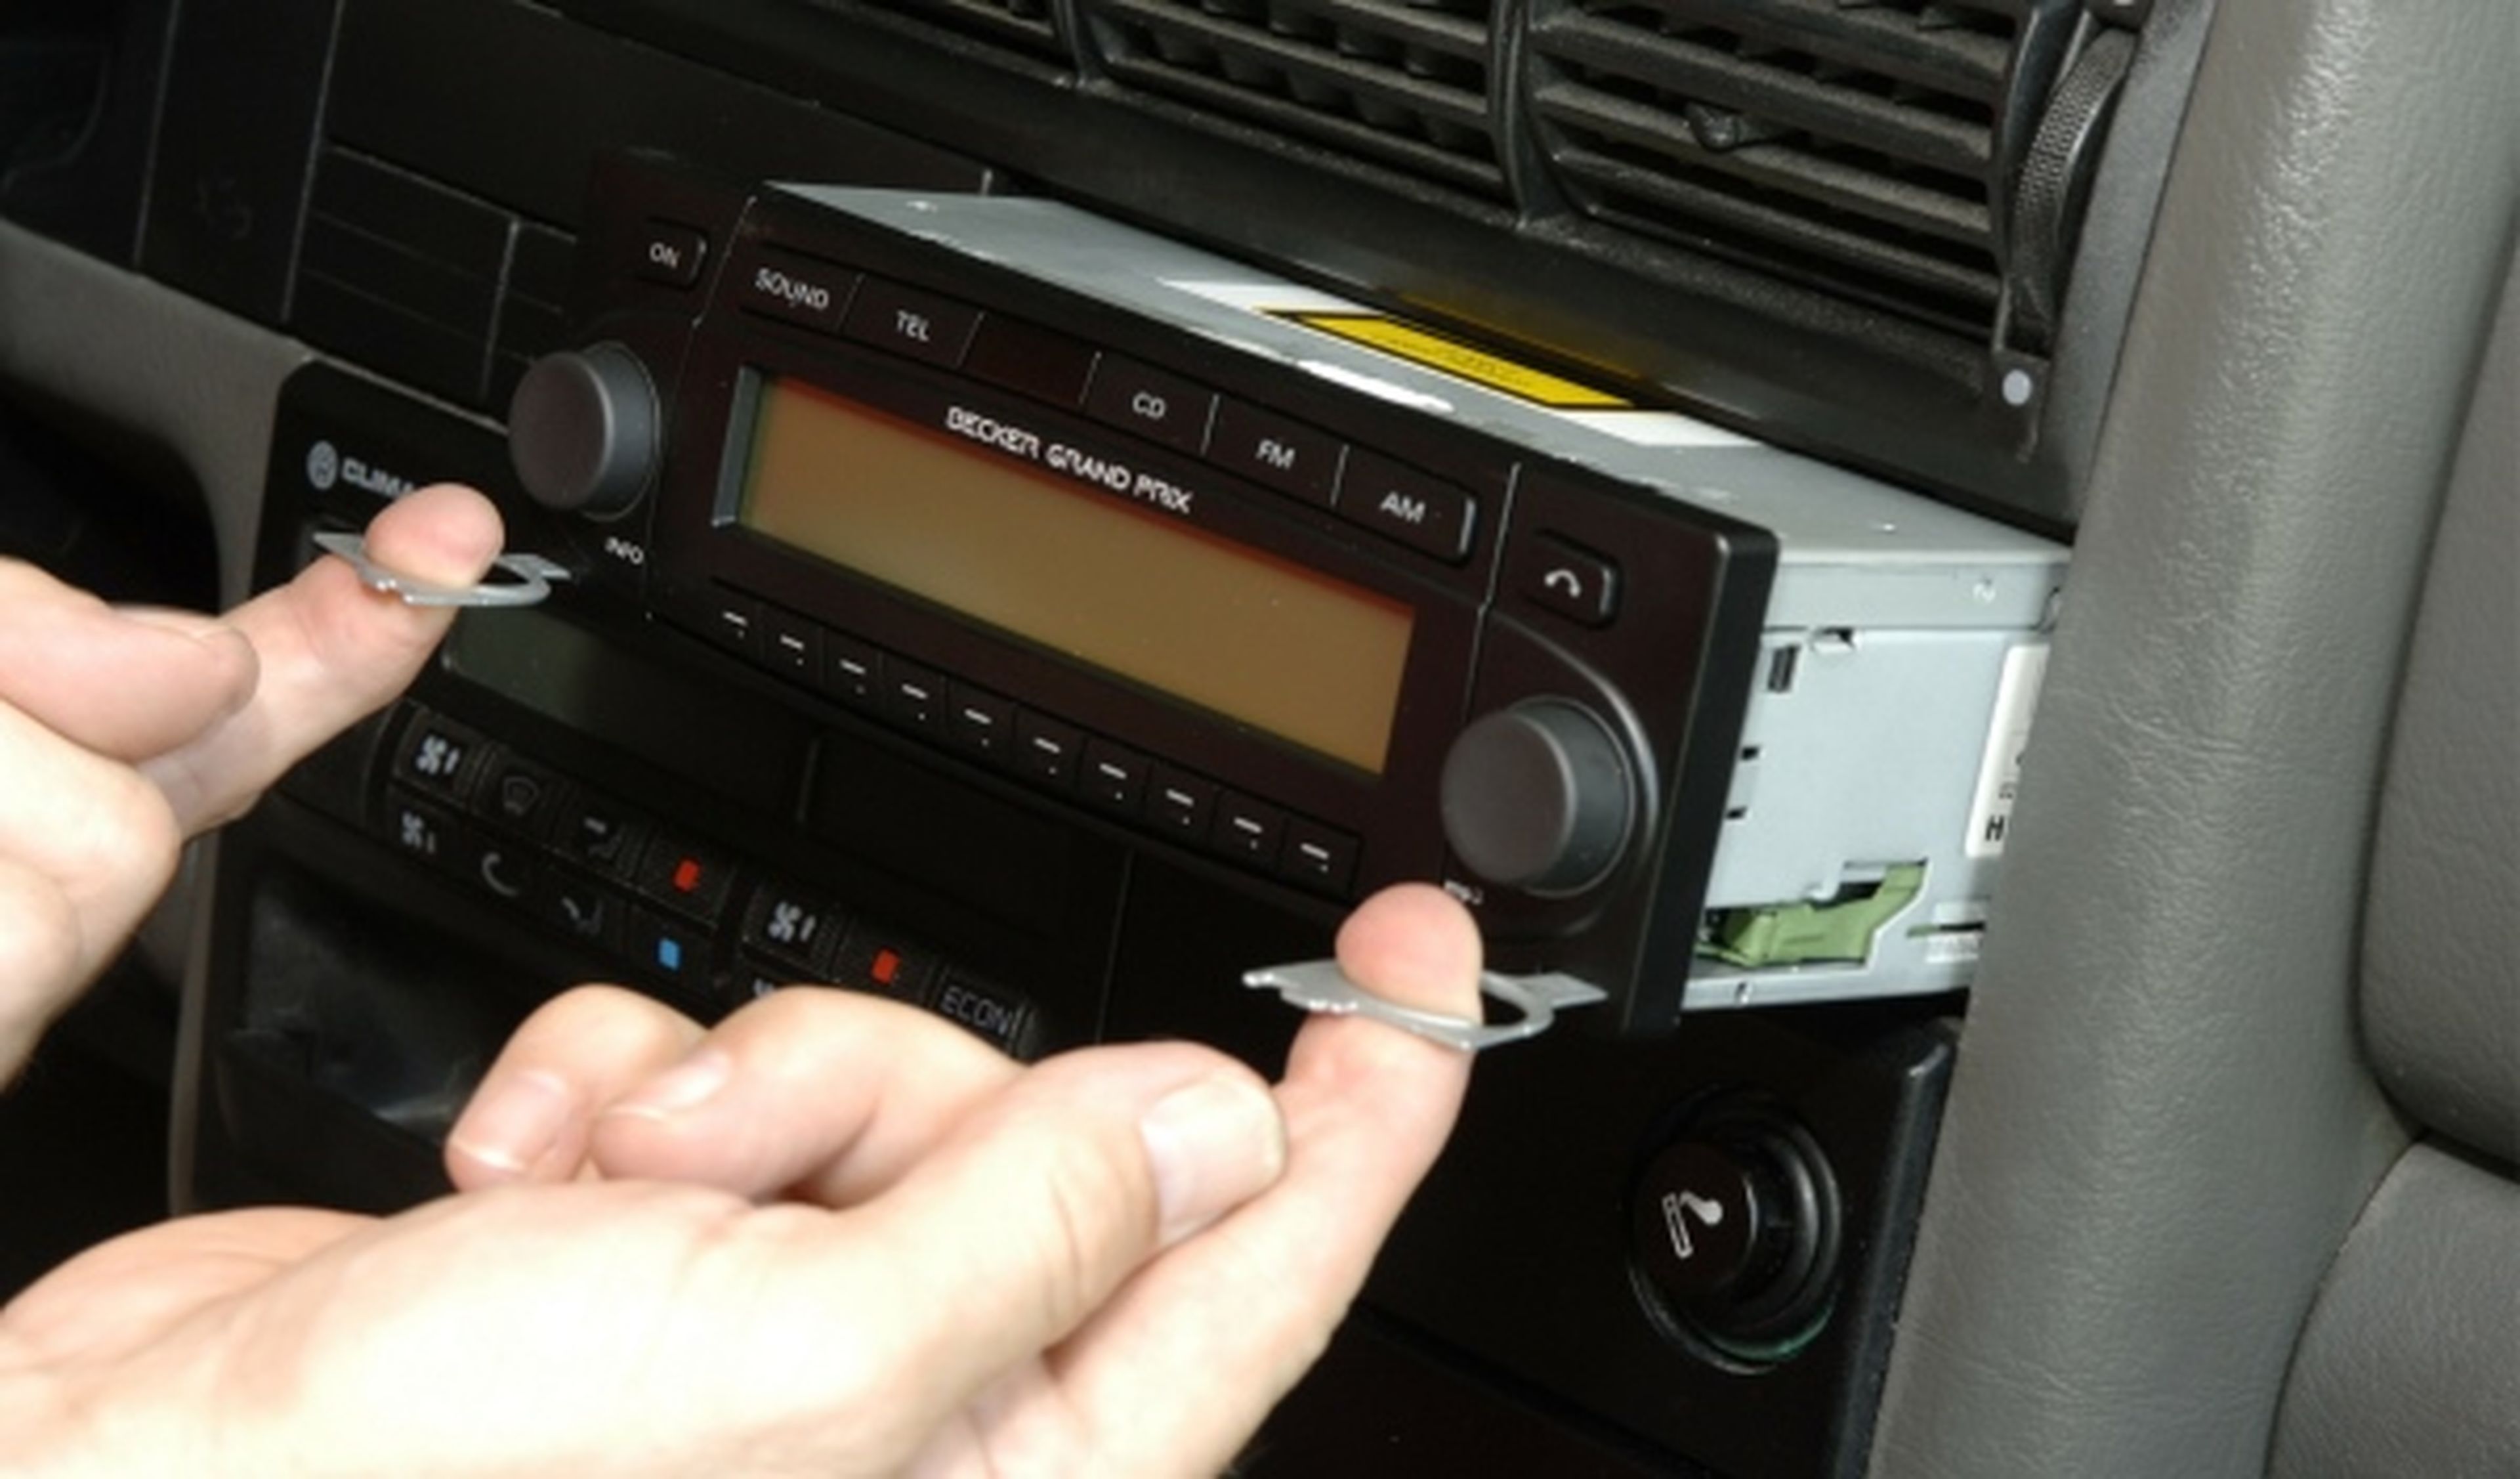 Cuándo surgió la radio en el auto y cómo evolucionó